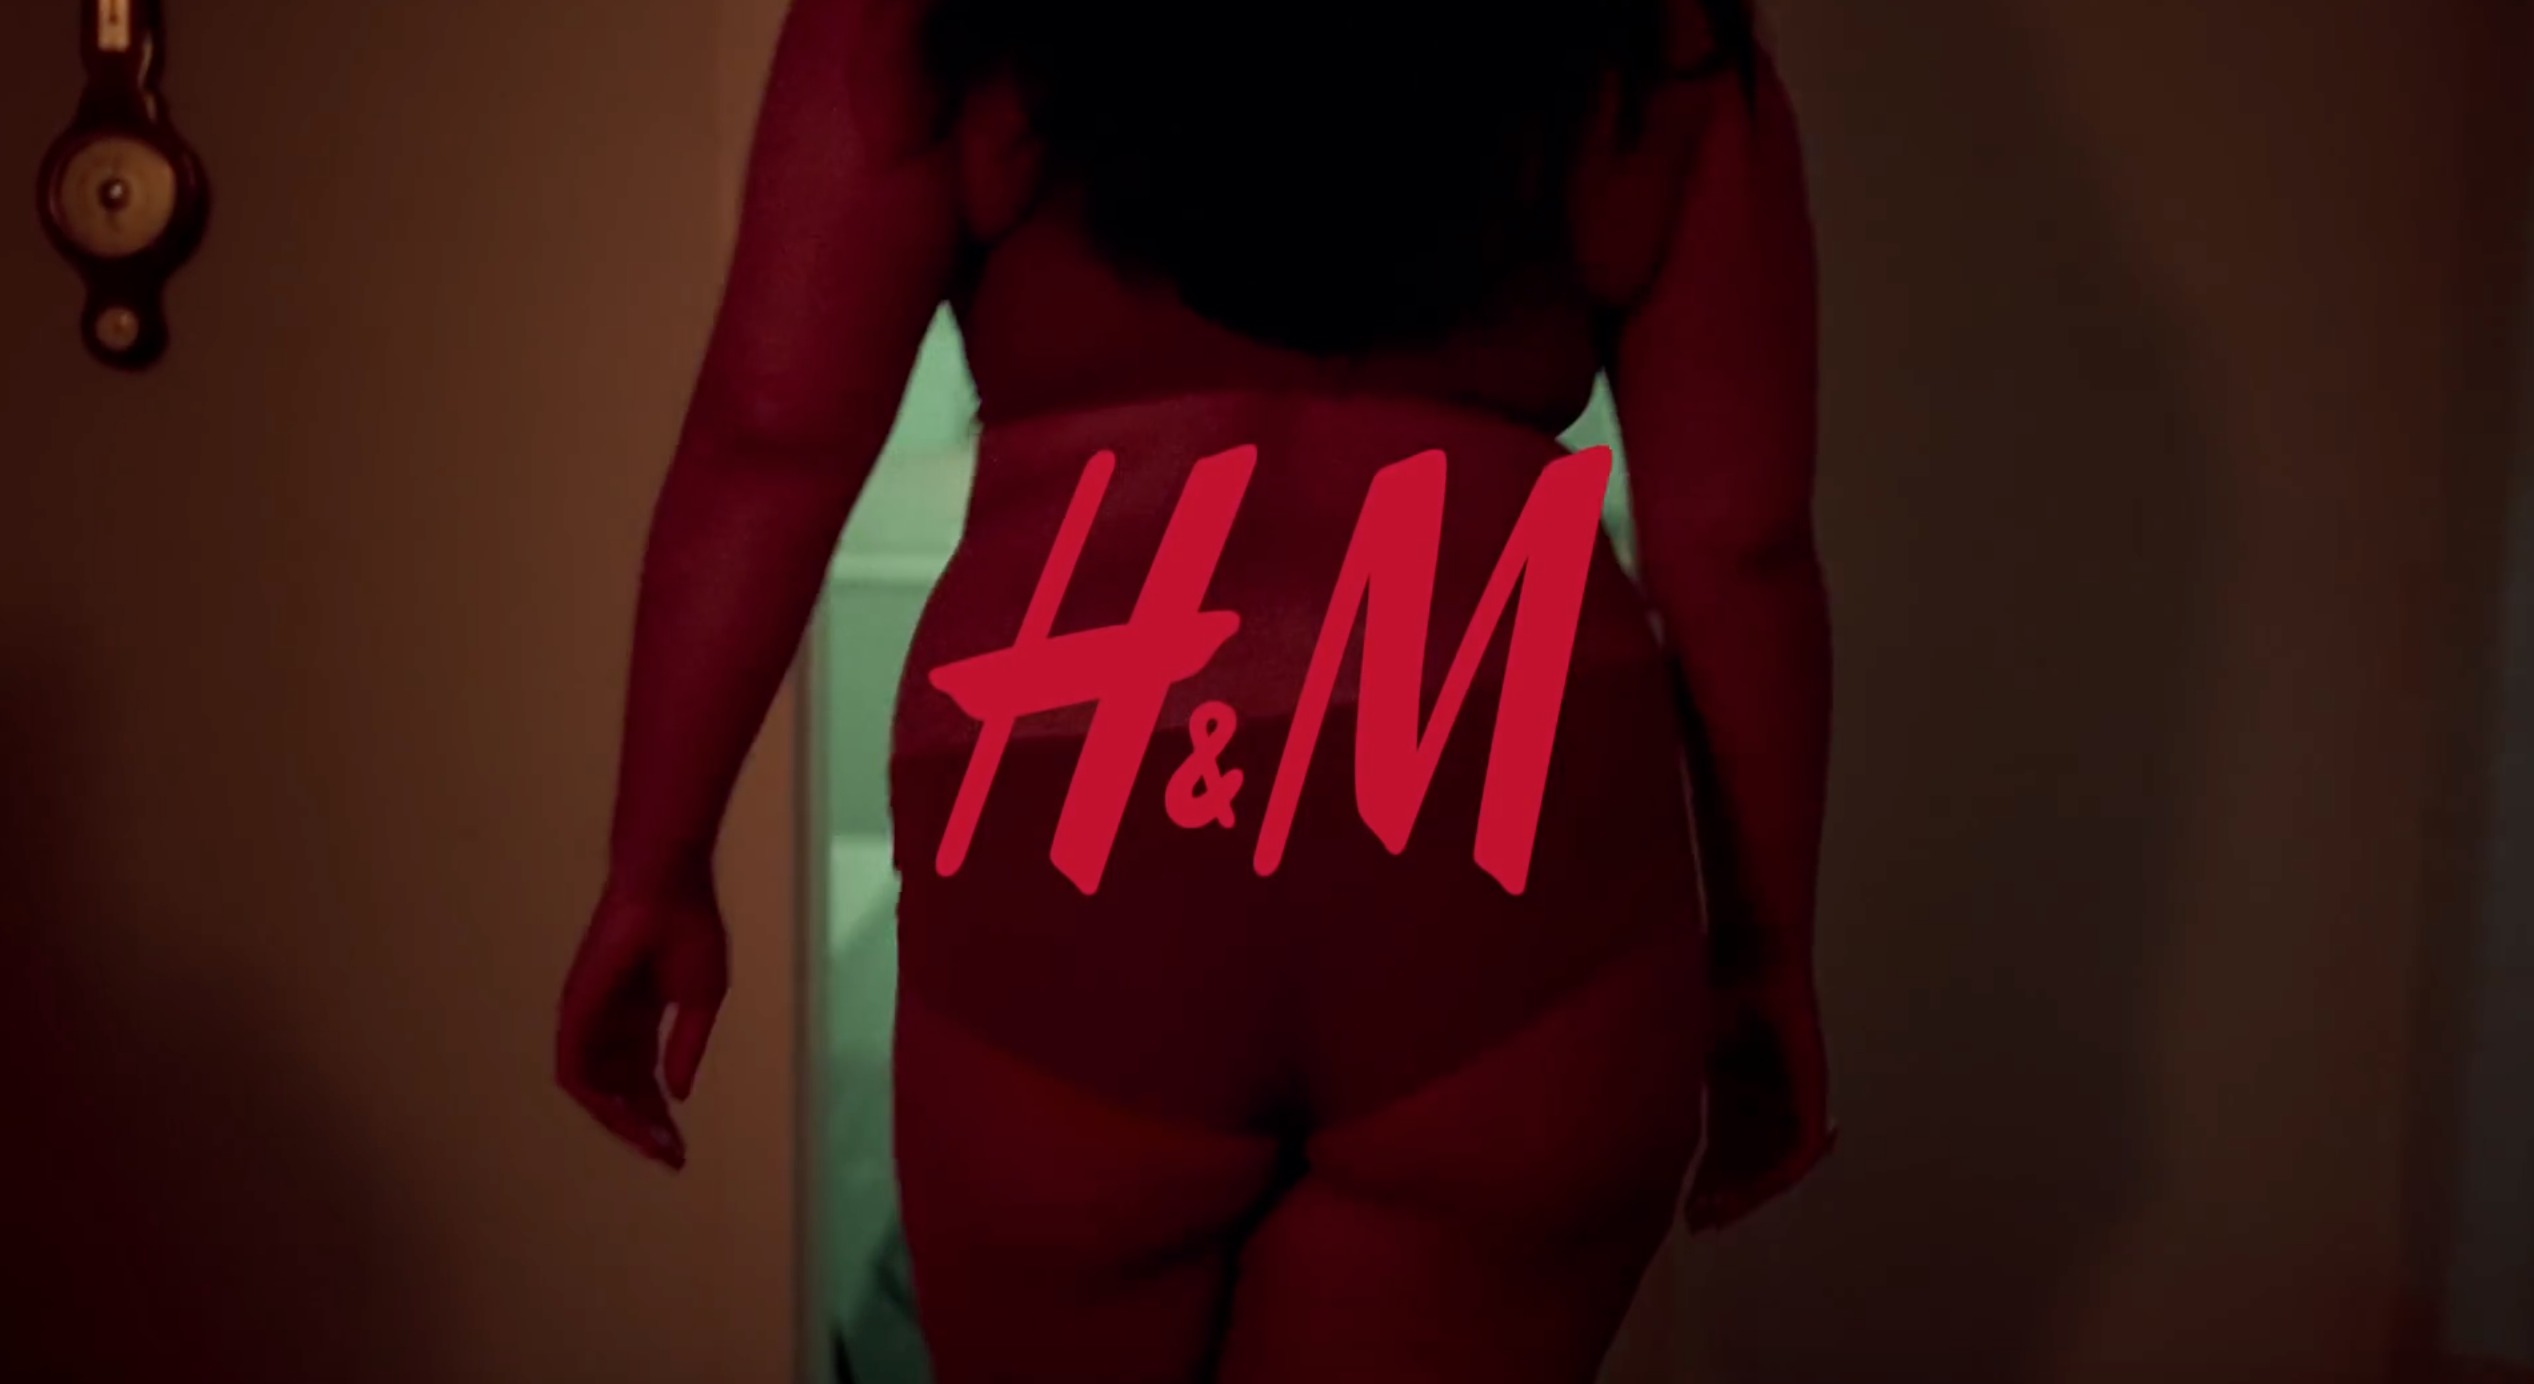 H&M-ის ახალი ვიდეორგოლი სტერეოტიპულ სტანდარტებს ებრძვის